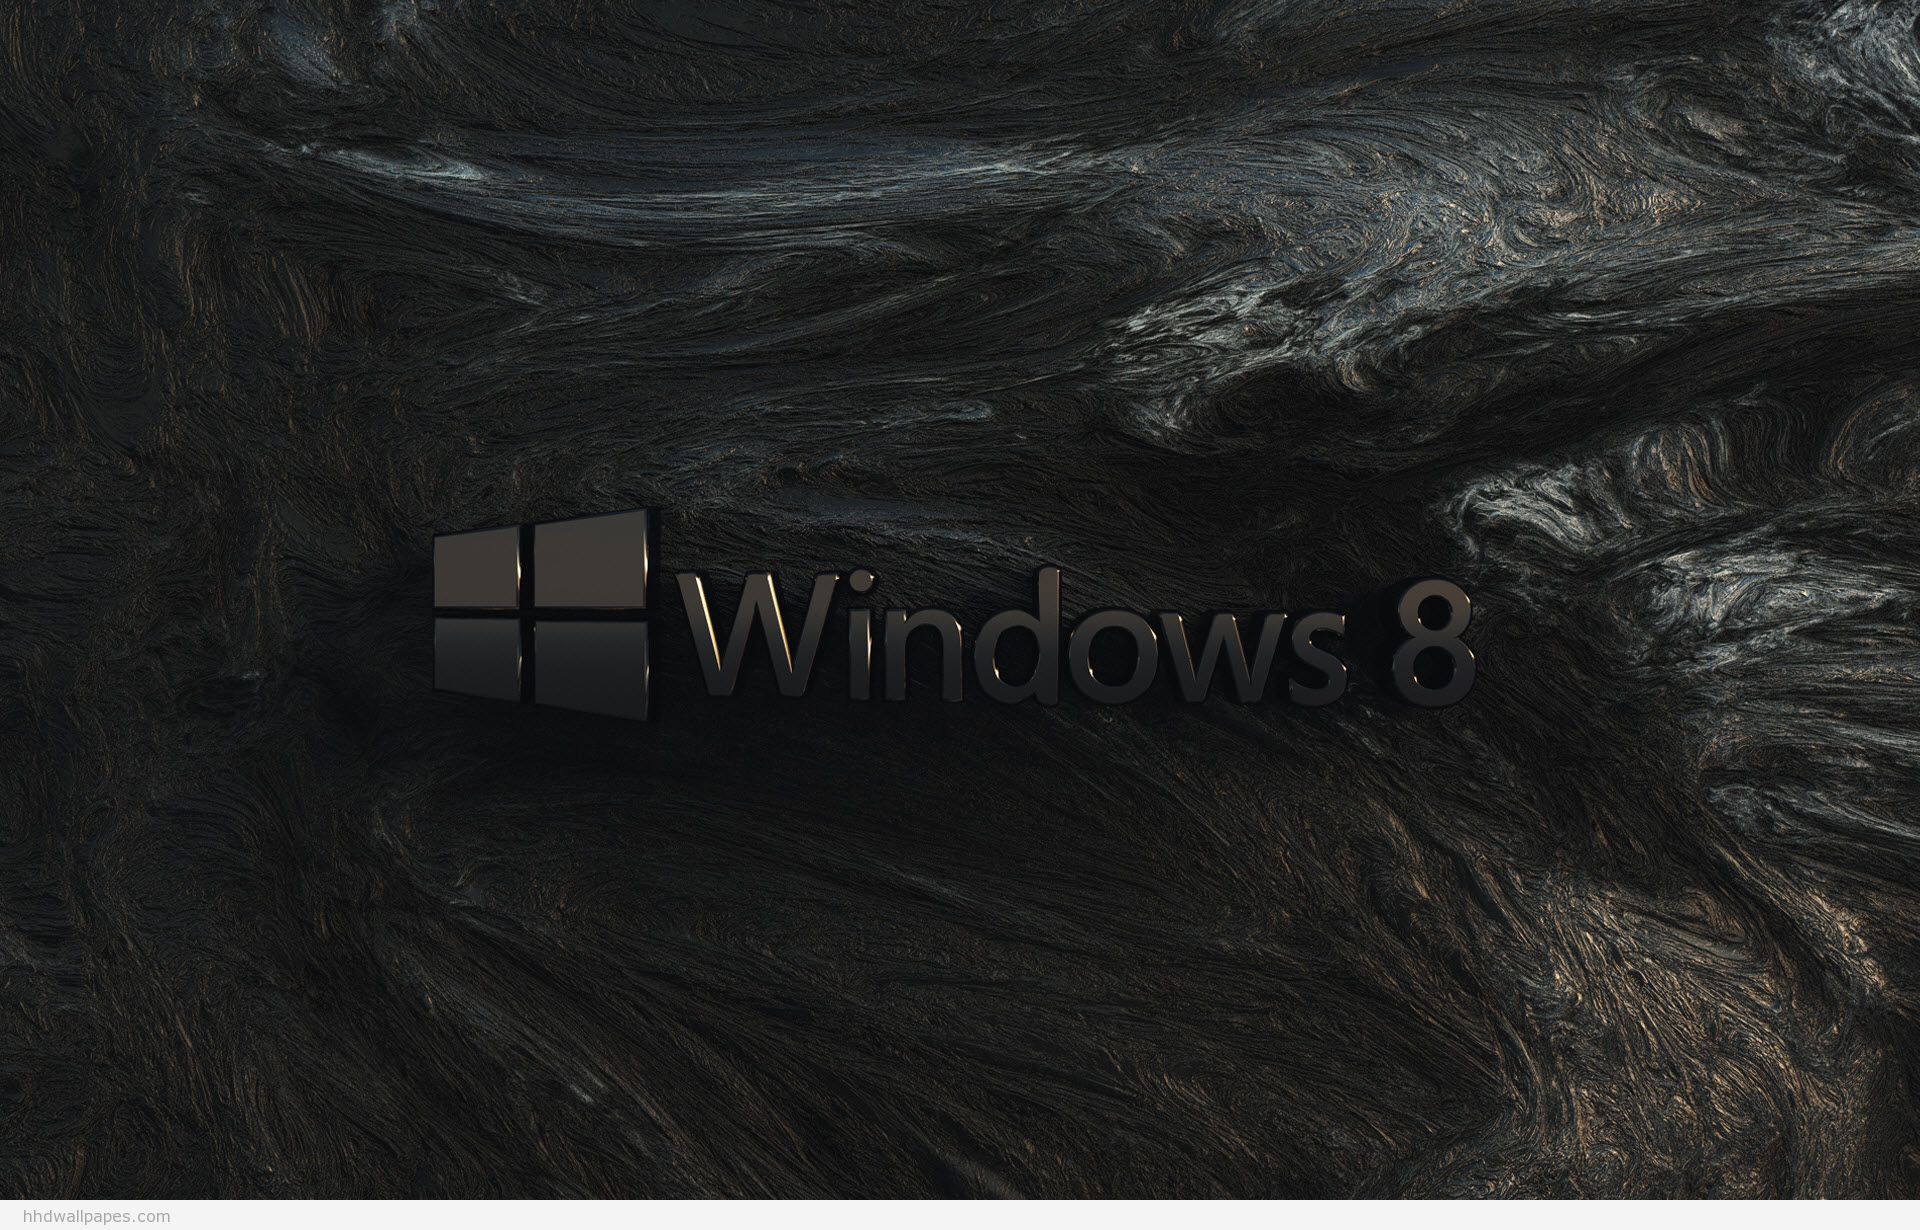 Hãy ngắm nhìn thiết kế nền của Windows 8, một huyền thoại được đánh giá cao trong giai đoạn đầu của một thế hệ Windows mới. Nền độc đáo và ấn tượng với sắc màu tươi sáng sẽ khiến bạn thích thú ngay từ cái nhìn đầu tiên!